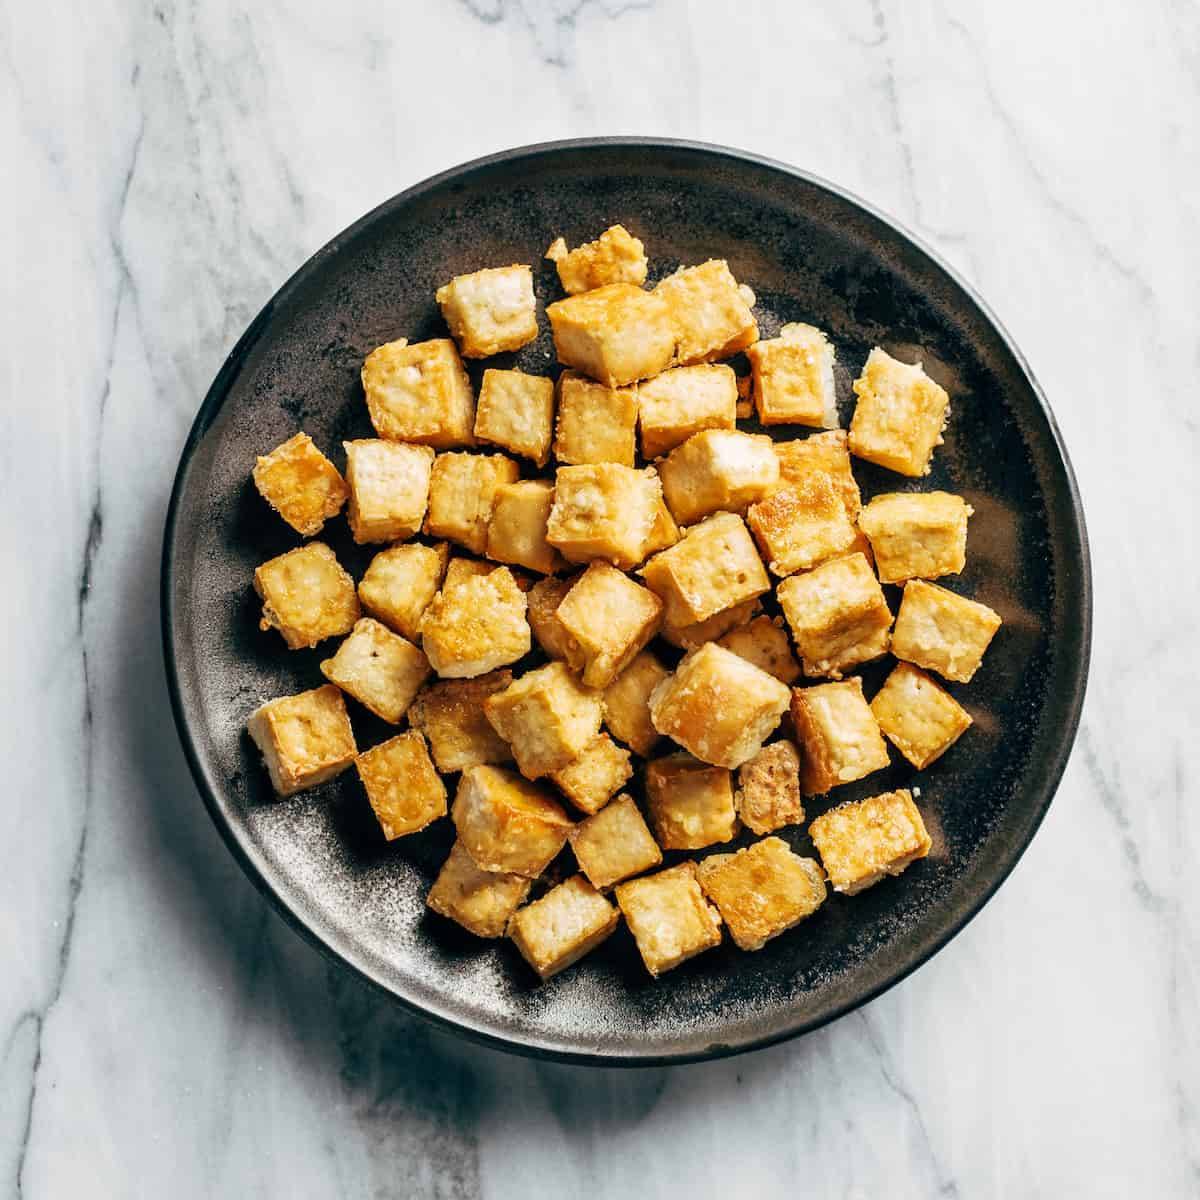 Crispy tofu in a bowl.